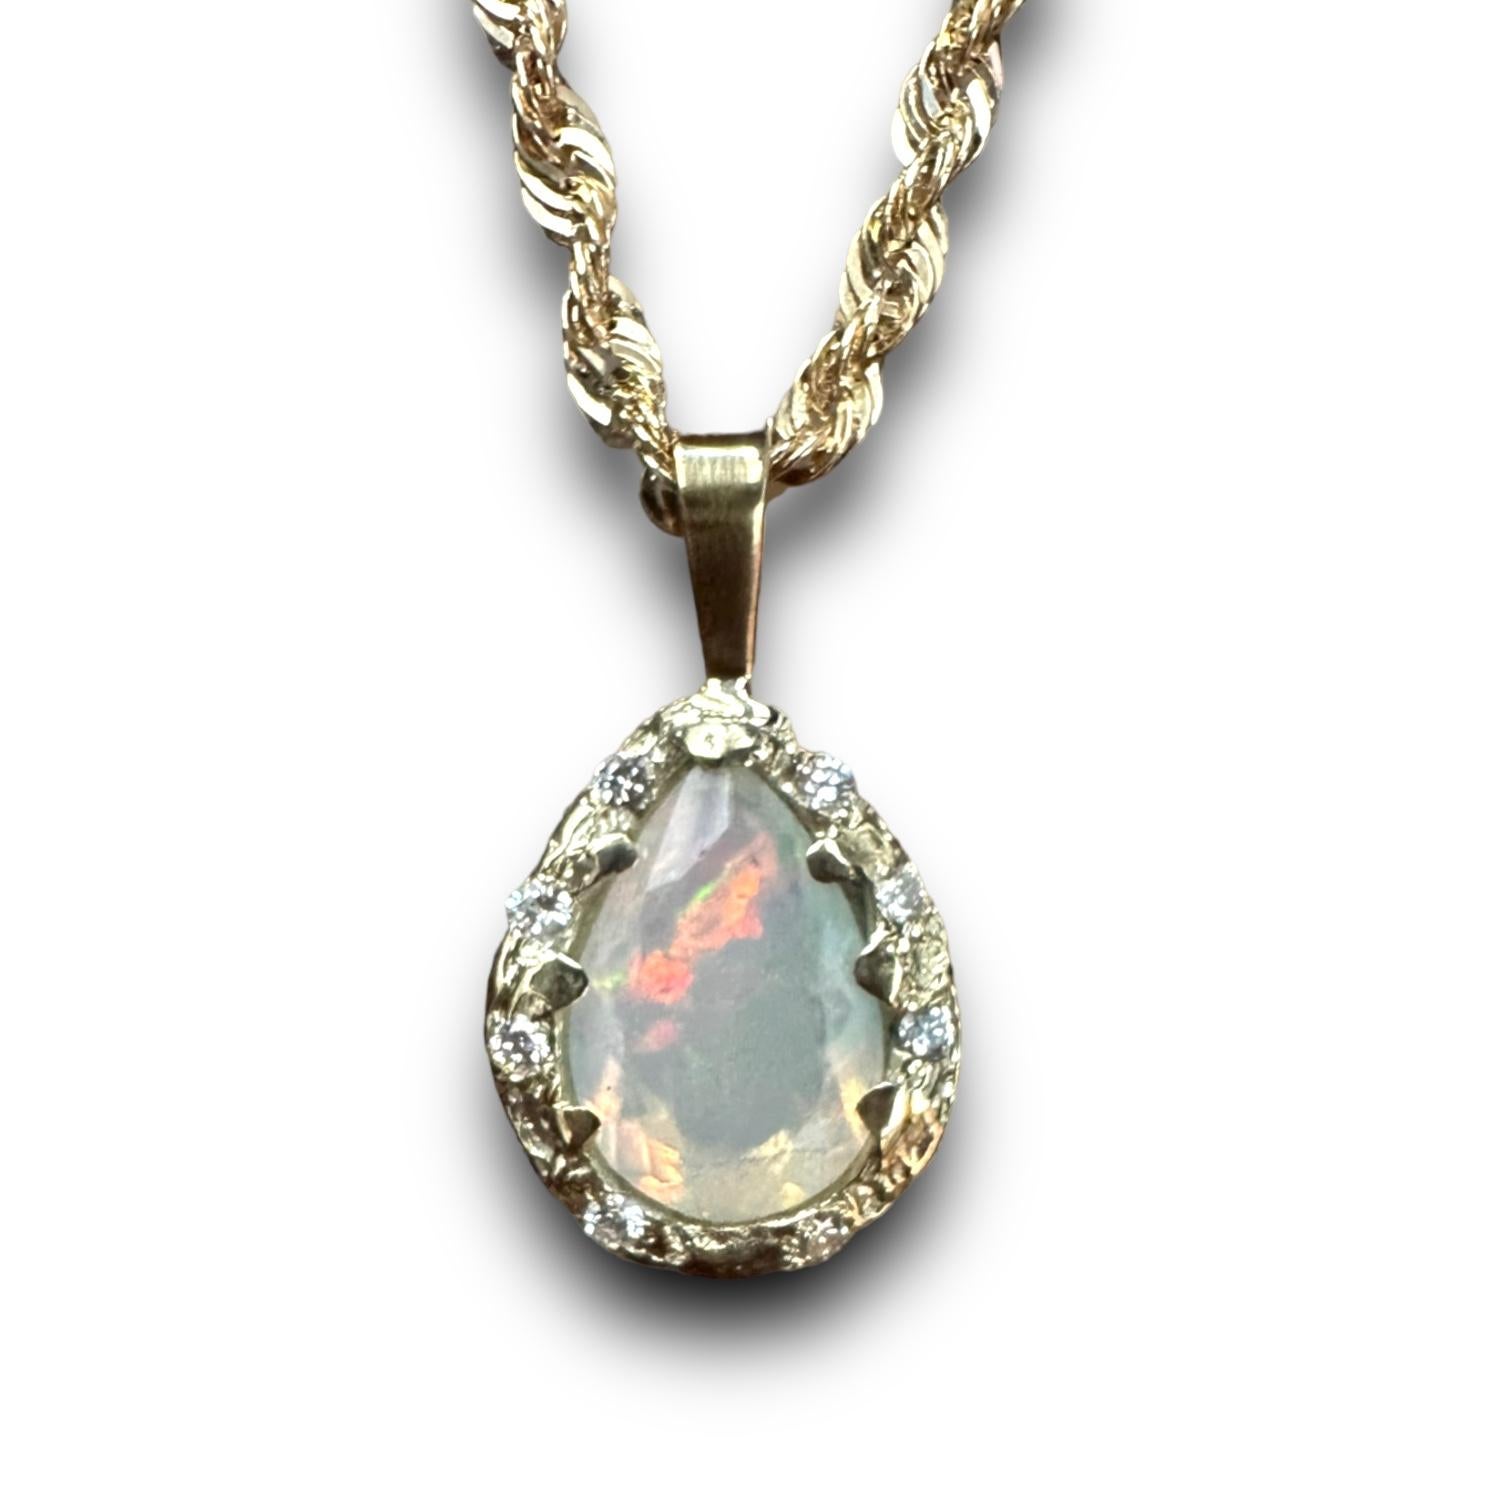 Voici Iris, notre collier de corde en opale magique avec diamants en or jaune 14k, unique en son genre ! Ce bijou exquis ne manquera pas d'attirer l'attention de tous par sa beauté envoûtante. Le collier comporte une superbe goutte d'opale qui a été